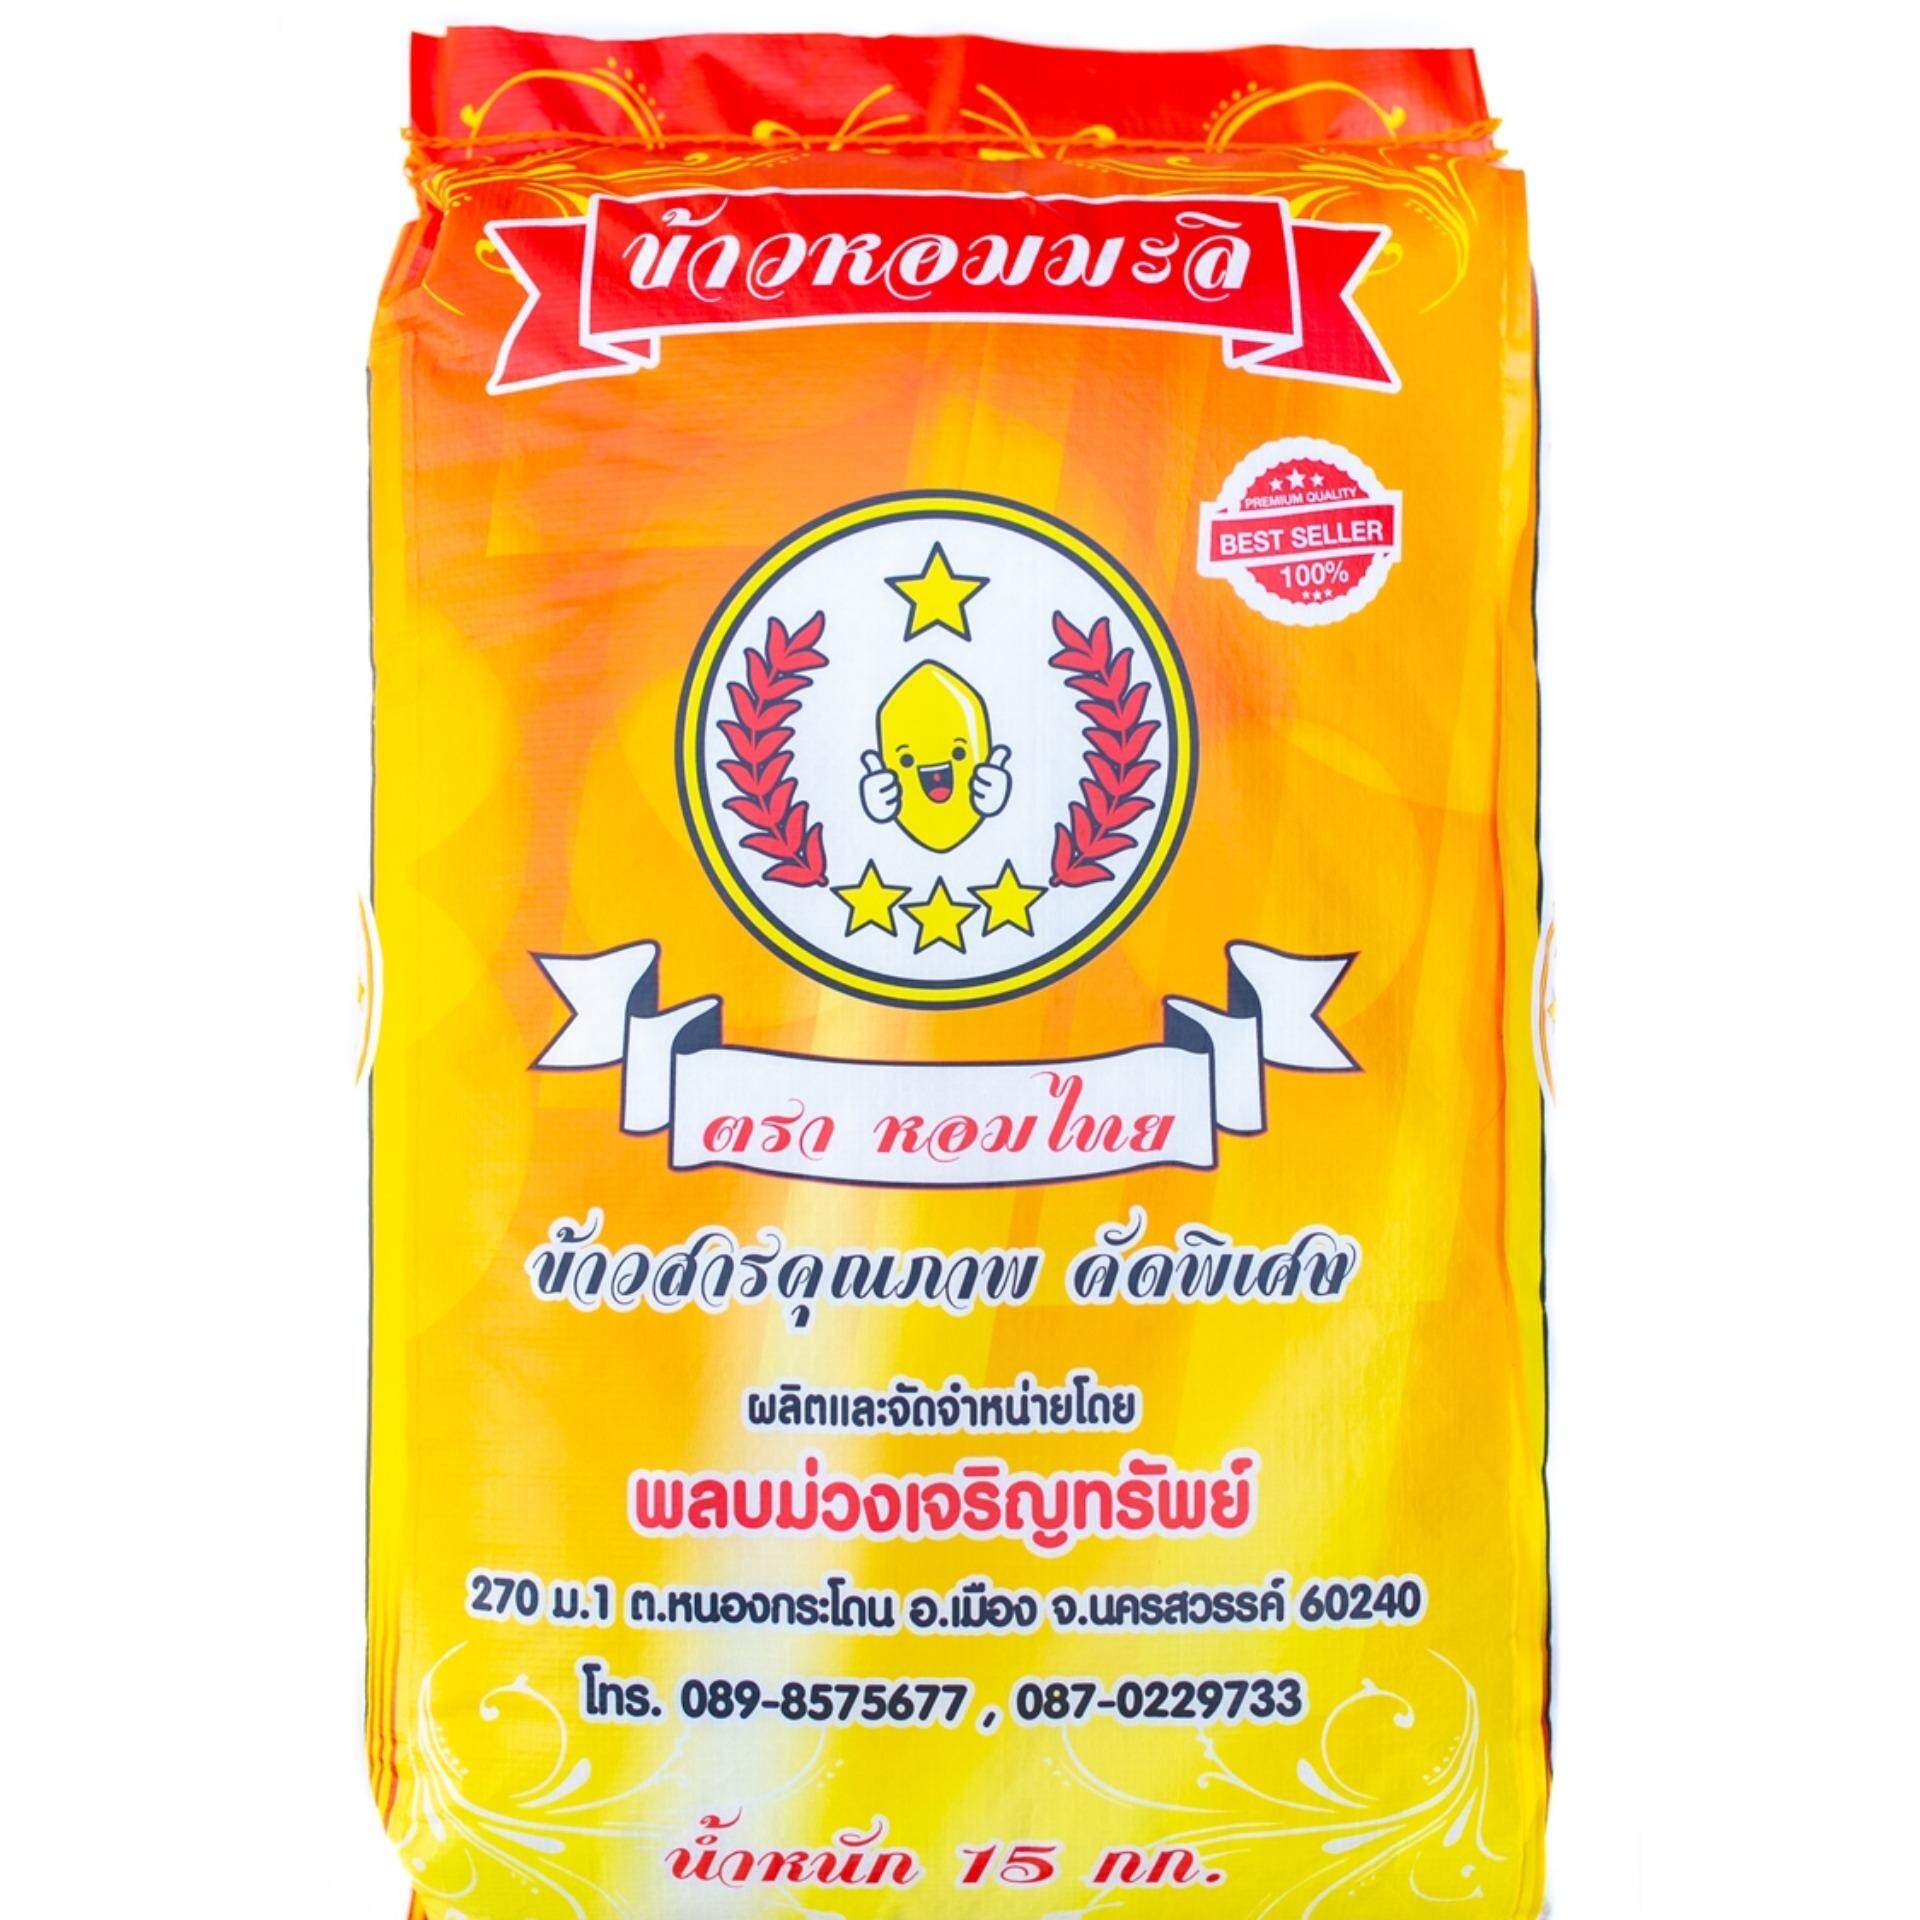 ข้าวหอมมะลิตราหอมไทยเกรดพรีเมี่ยม ขนาด15กก. /Thai Hom Mali Rice (HOMTHAI Grade#A) 15kg x1Pcs